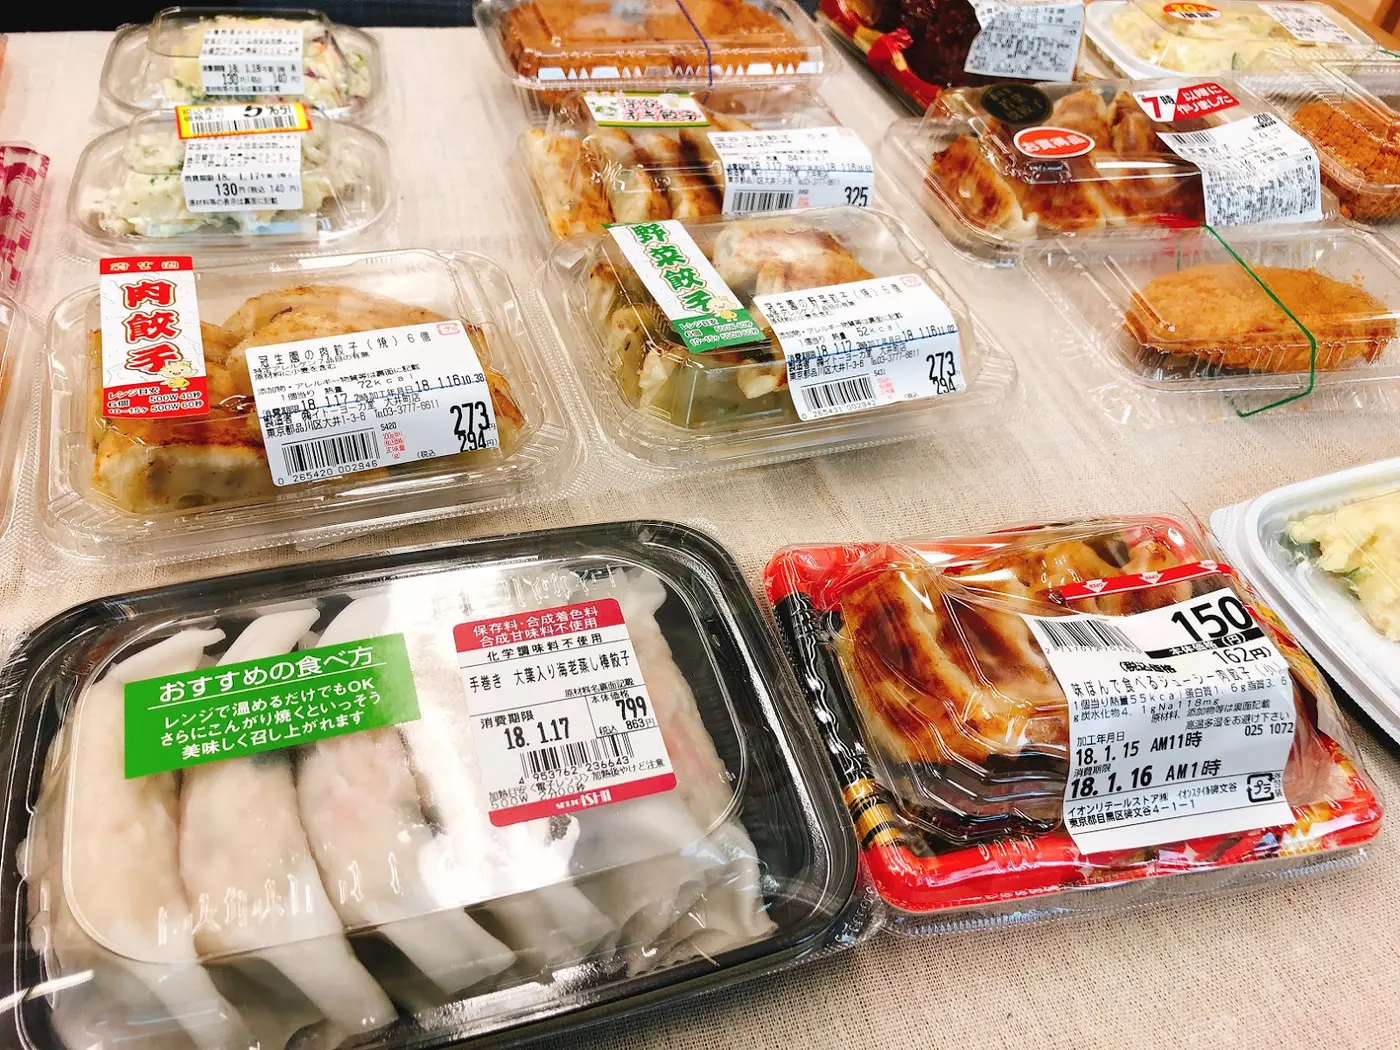 スーパー惣菜餃子no 1はどこだ 人気スーパー9店で徹底比較 トクバイニュース